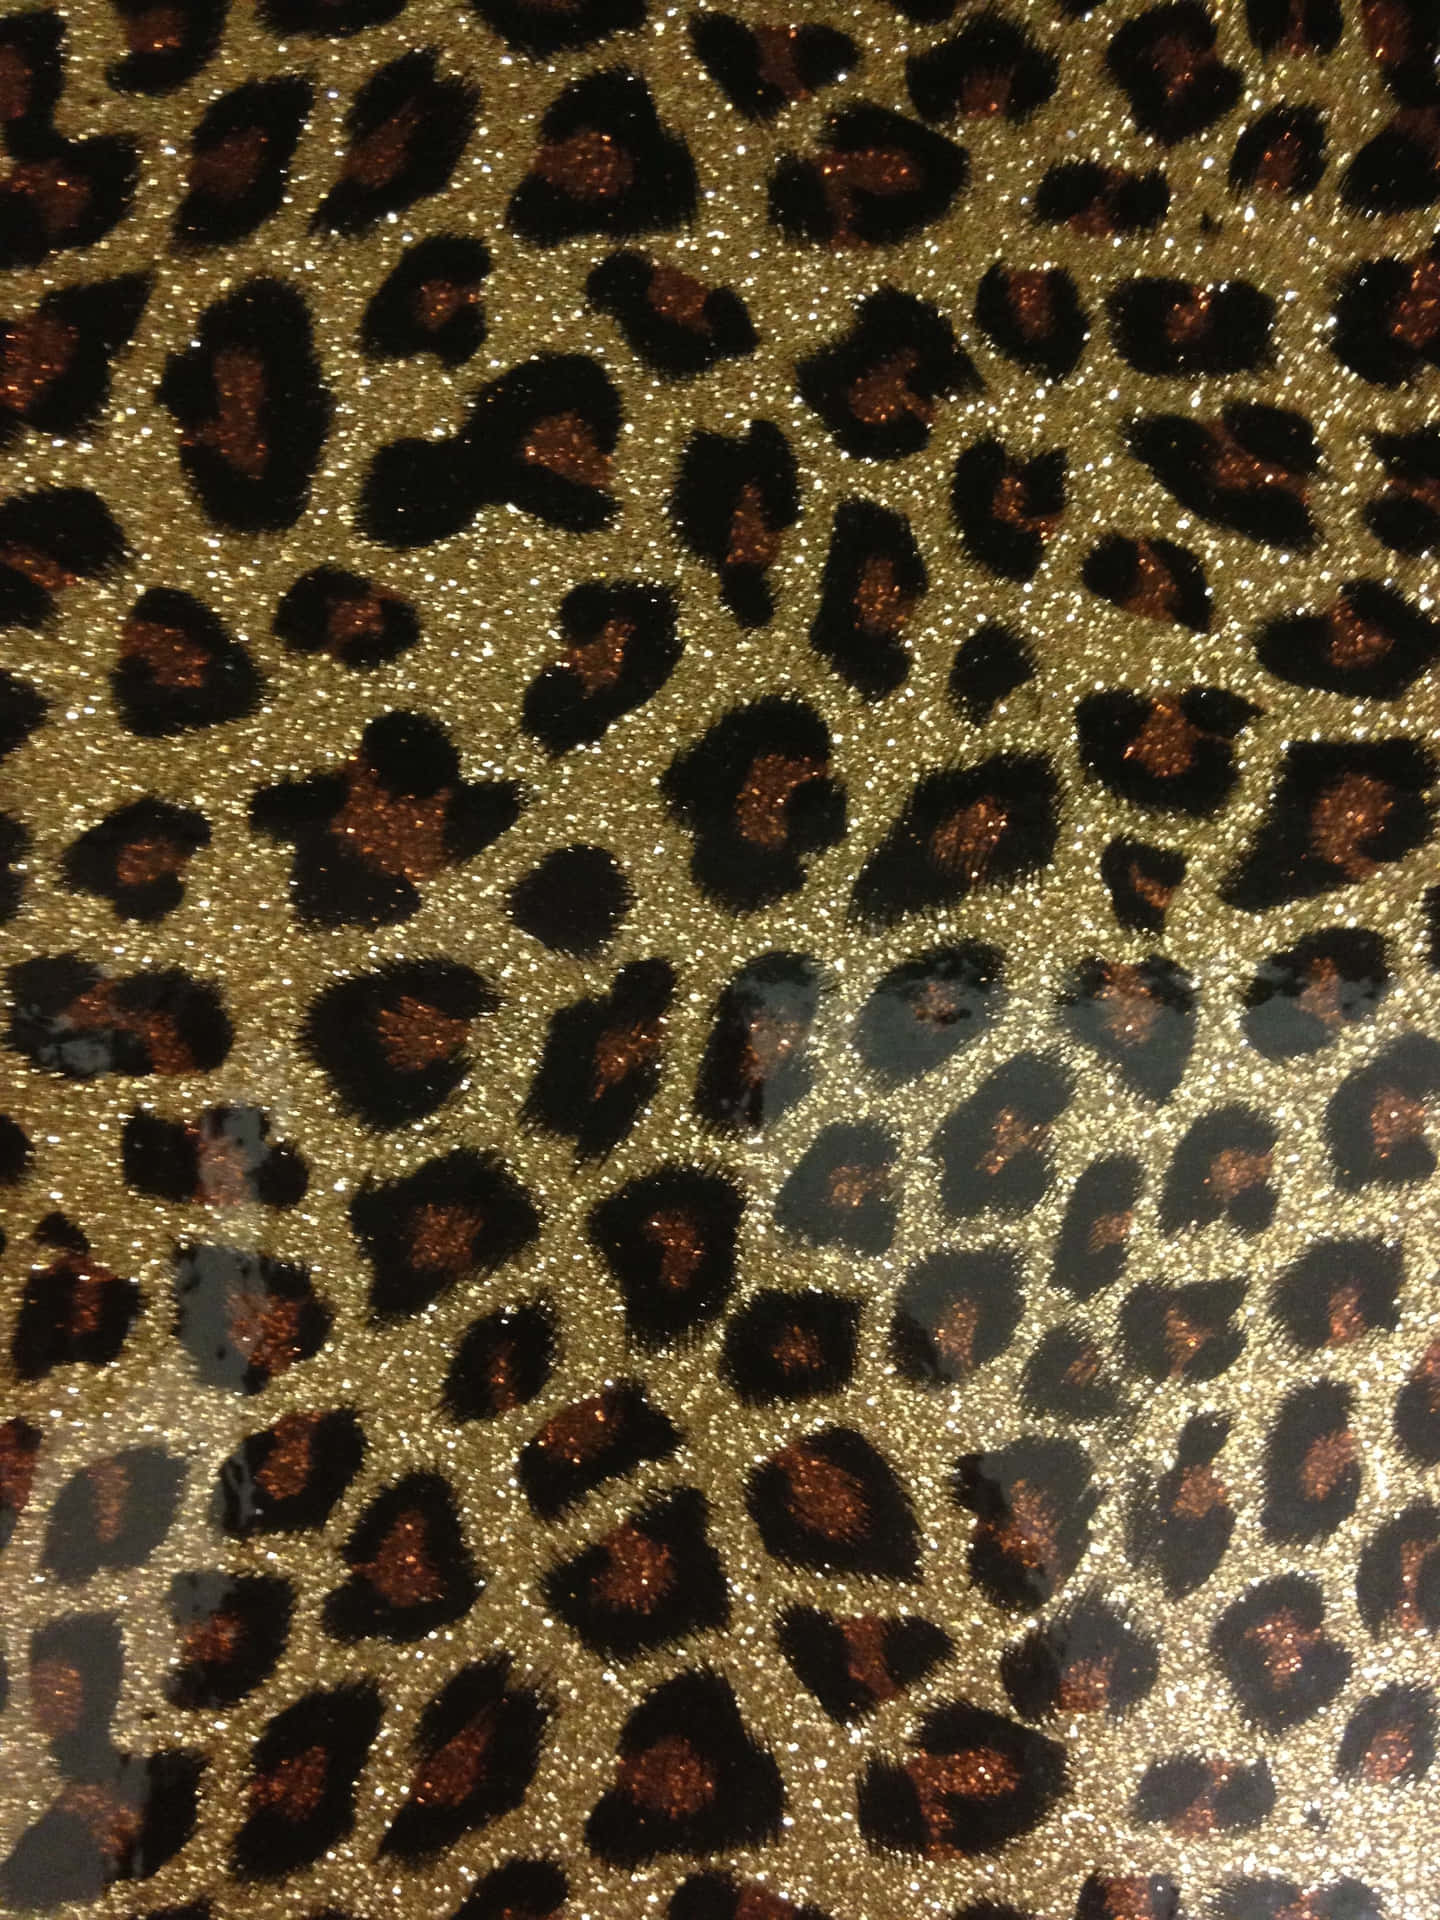 Glitter Leopard Fabric, Wallpaper and Home Decor